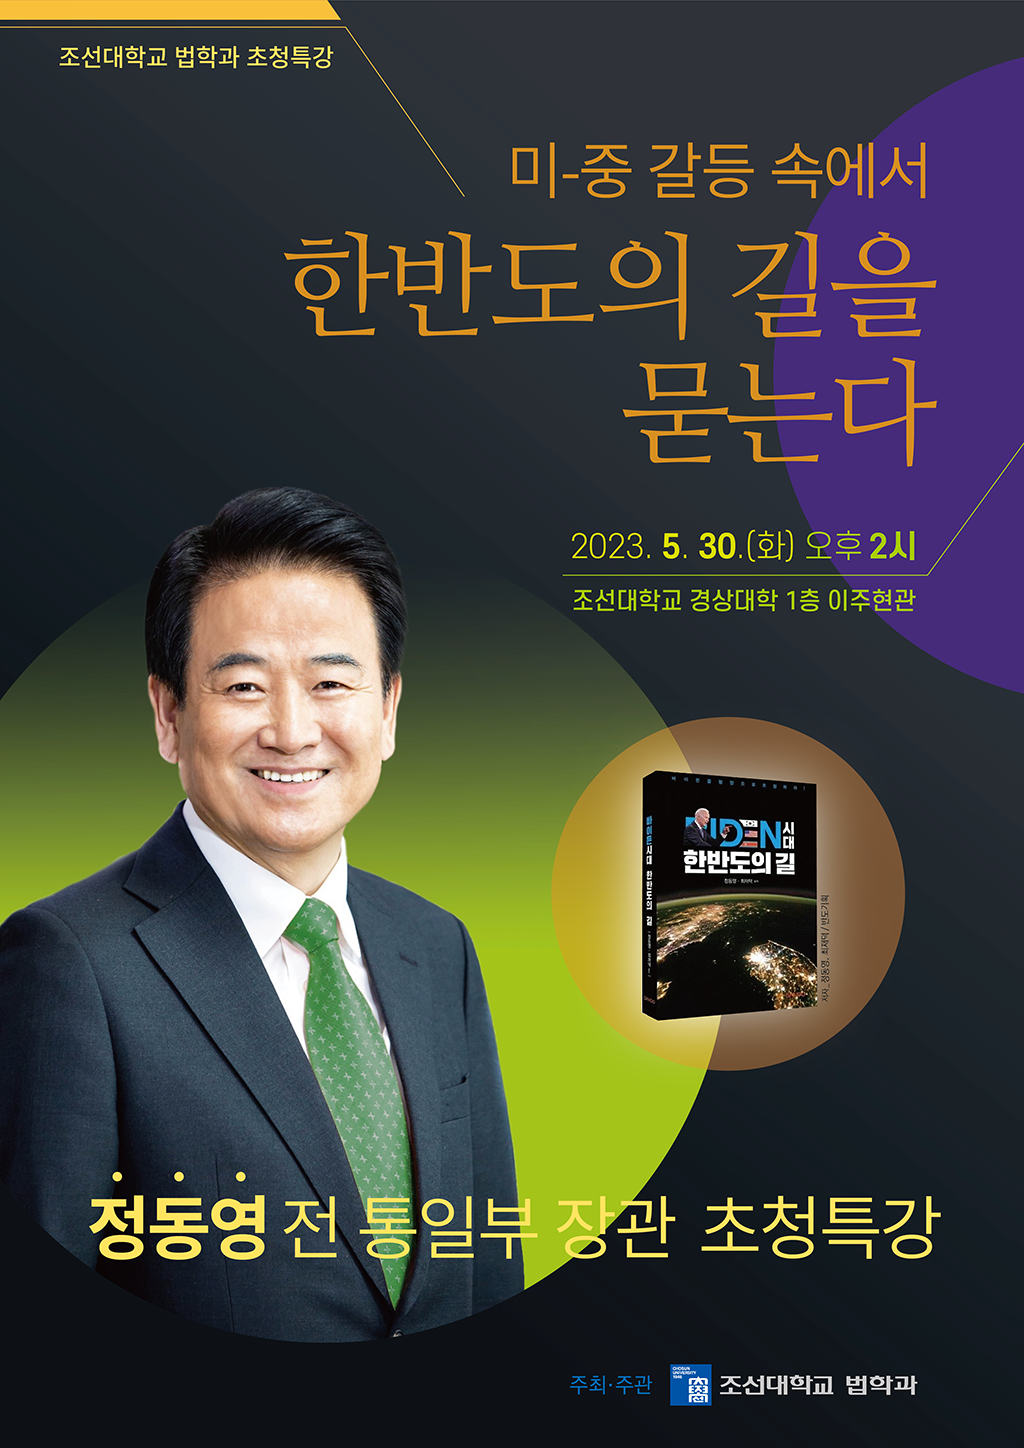 [특강안내] 정동영 전 통일부 장관 특강 개최 (5/30 14:00~)